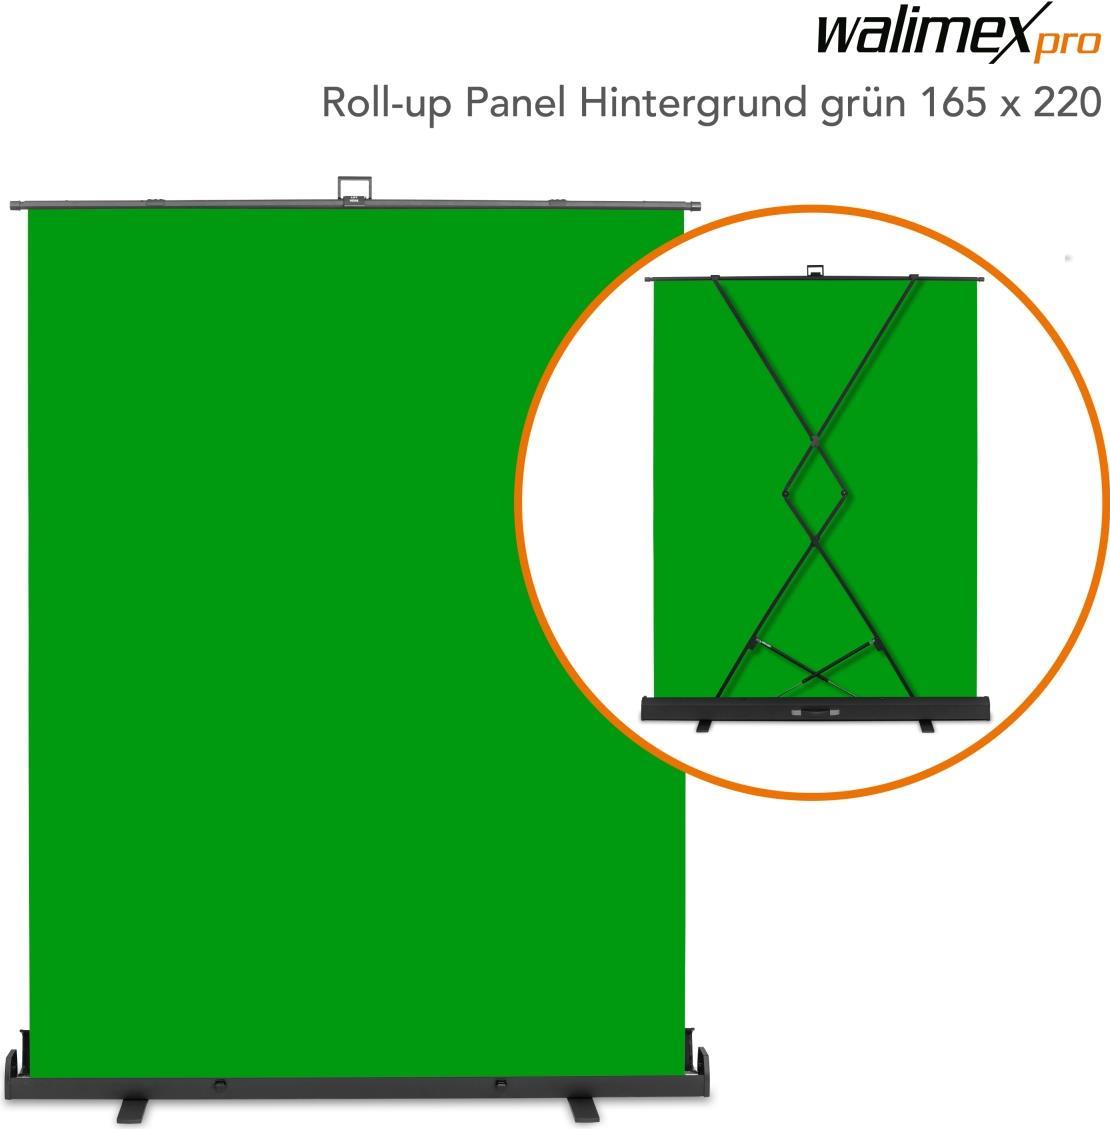 WALSER Walimex pro Roll-up Panel Hintergrund grün 165x220 (23204)